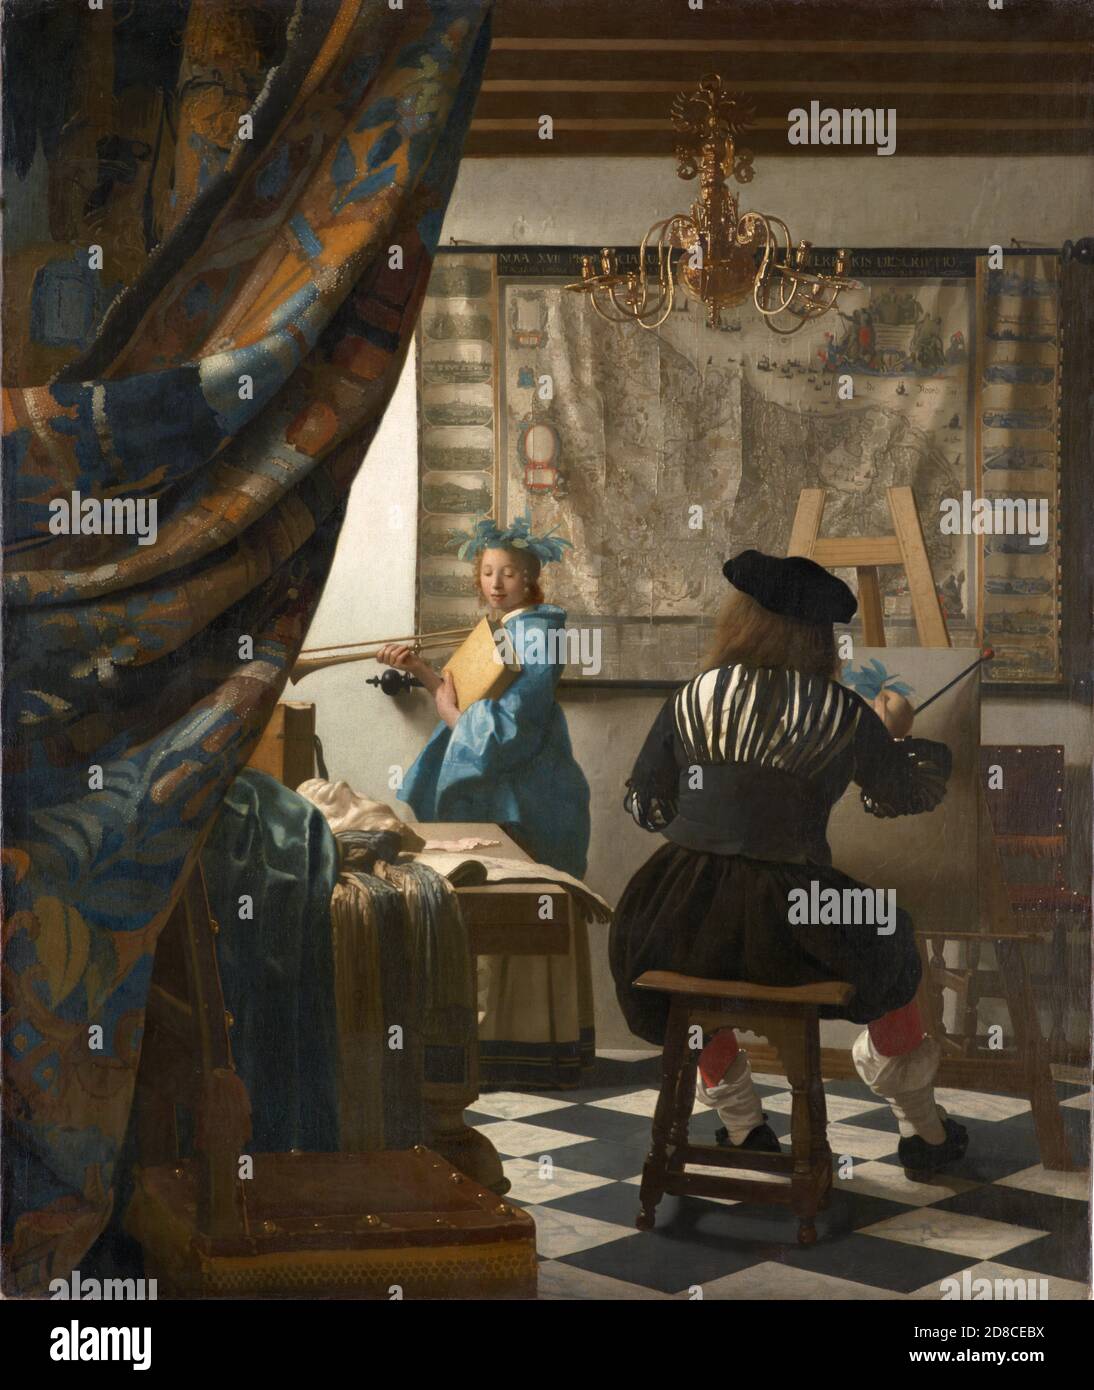 Titel: Atelier des Künstlers Ersteller: Johannes Vermeer Datum: 1665 Medium: Öl auf Leinwand Dimension: 120 x 100 cms Ort: Kunsthistorisches Museum, Wien Stockfoto